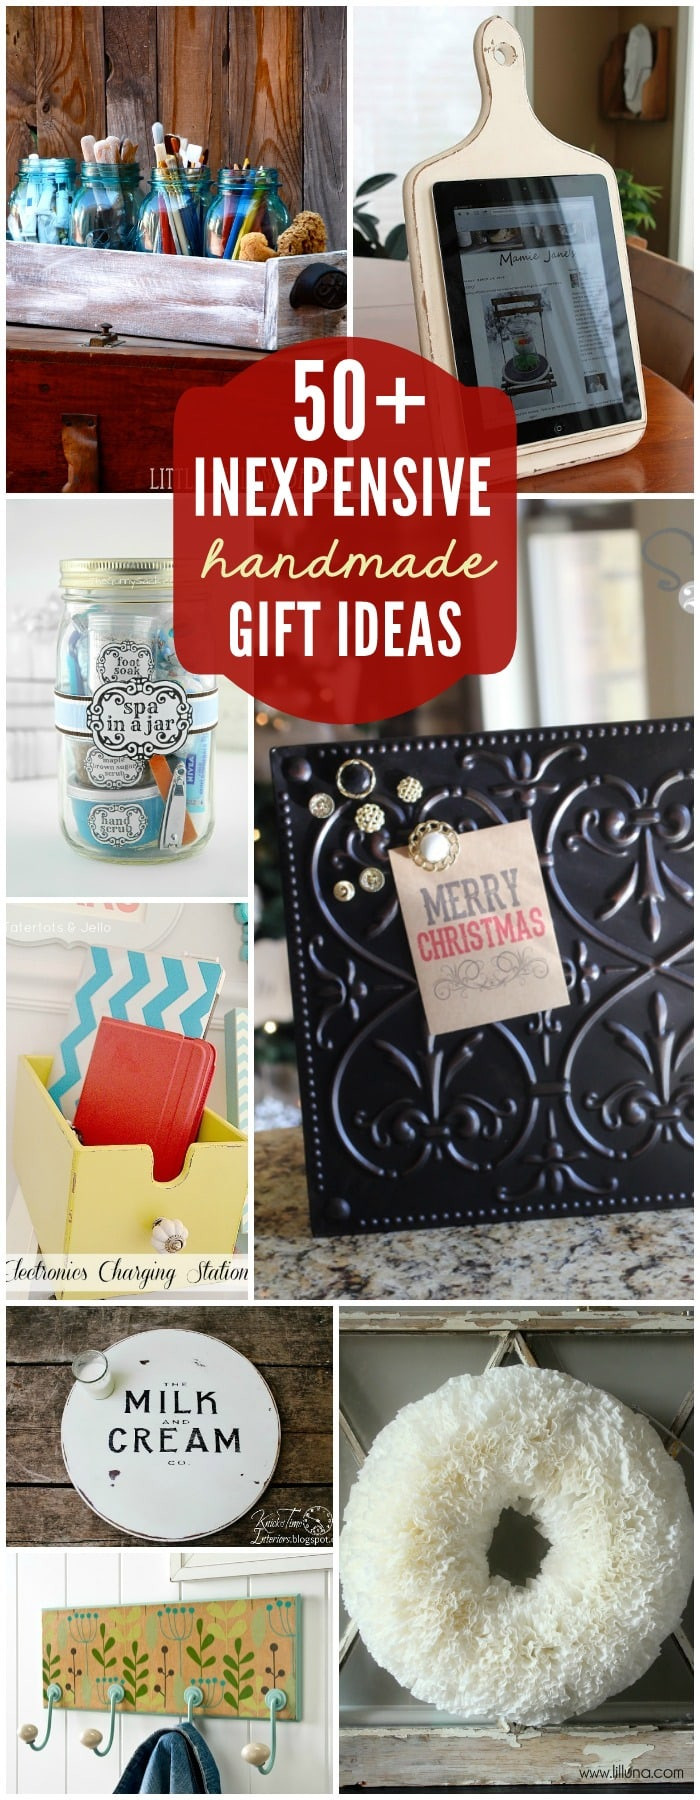 Best Gift Ideas
 75 Gift Ideas under $5